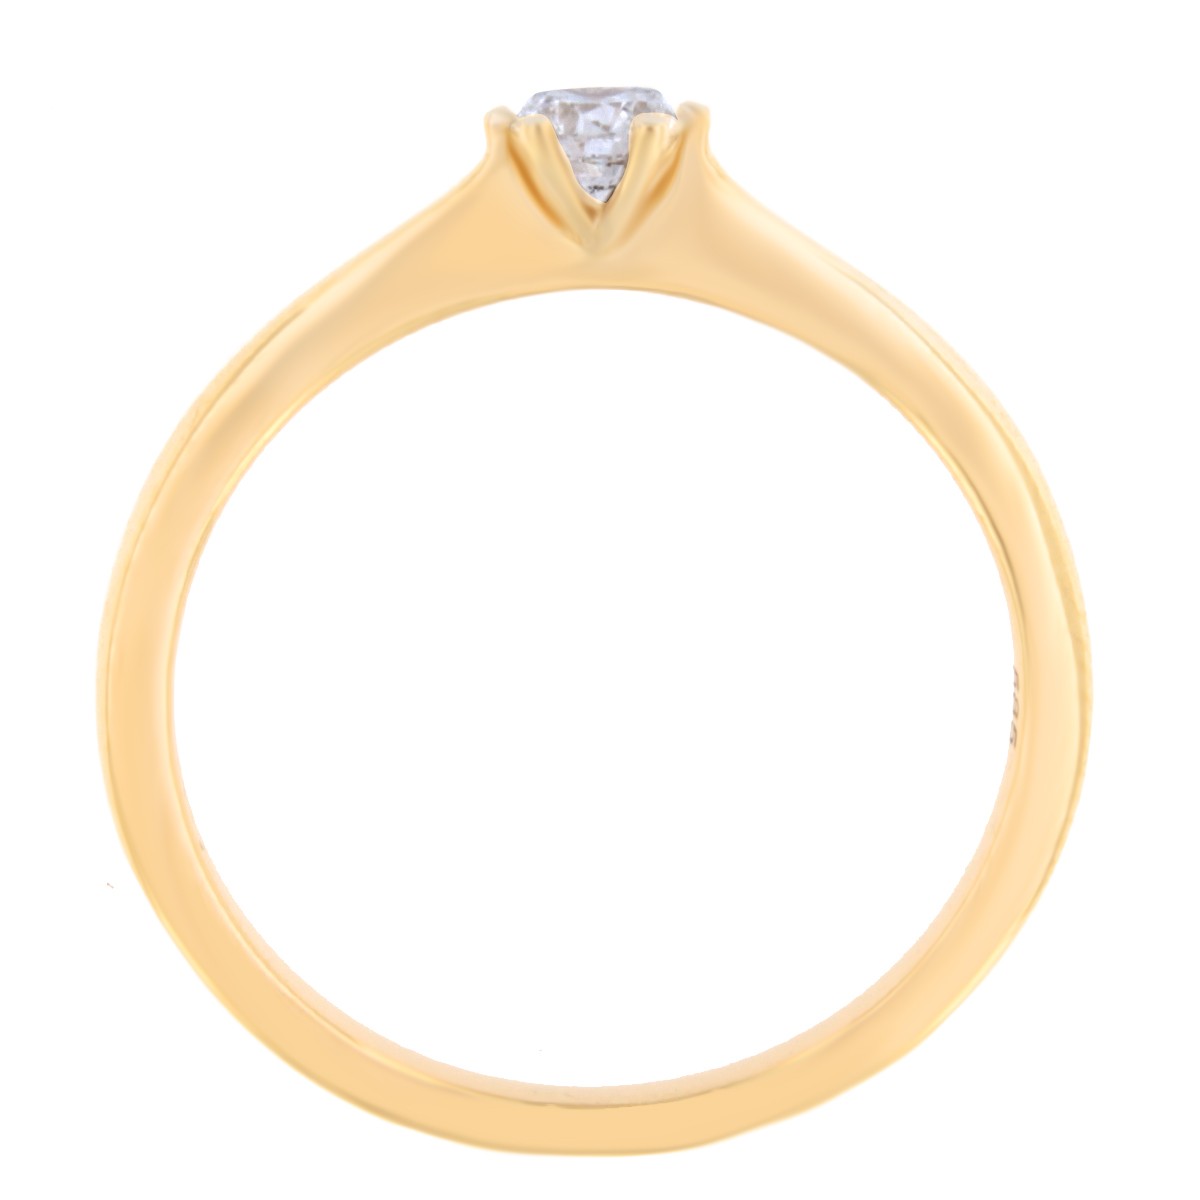 Kullast sõrmus teemantiga 0,15 ct. Kood: 68ae-rg46873